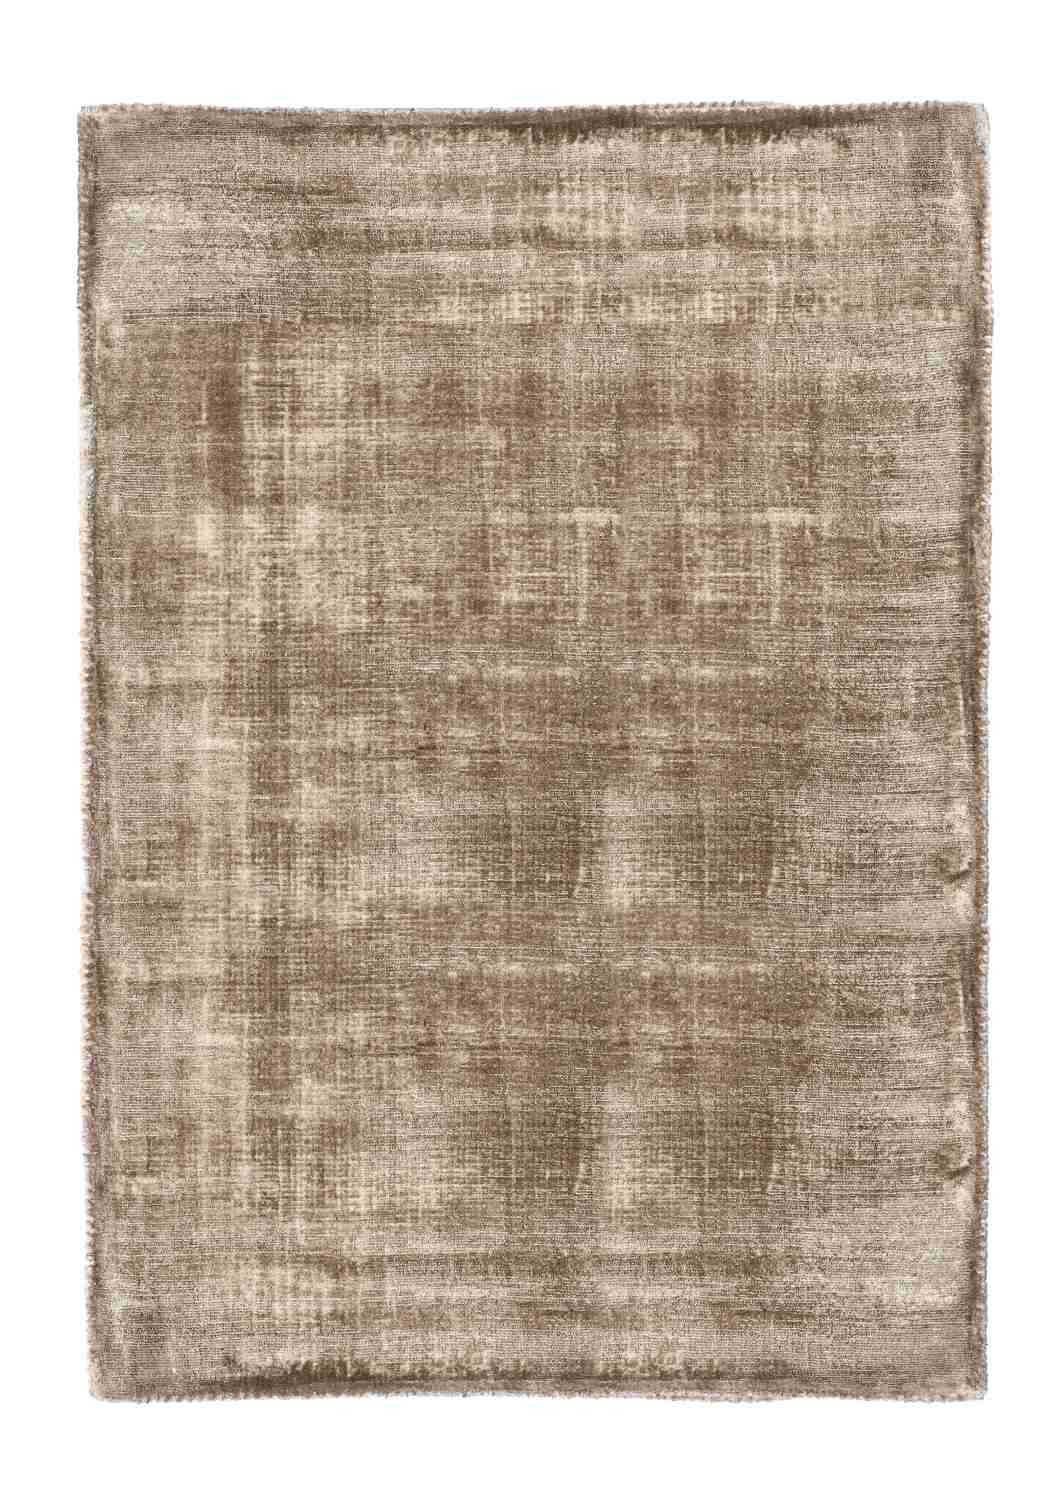 Der Teppich Rashmi überzeugt mit seinem modernen Design. Gefertigt wurde die Vorderseite aus Viskose und die Rückseite aus Baumwolle. Der Teppich besitzt eine braunen Farbton und die Maße von 140x200 cm.